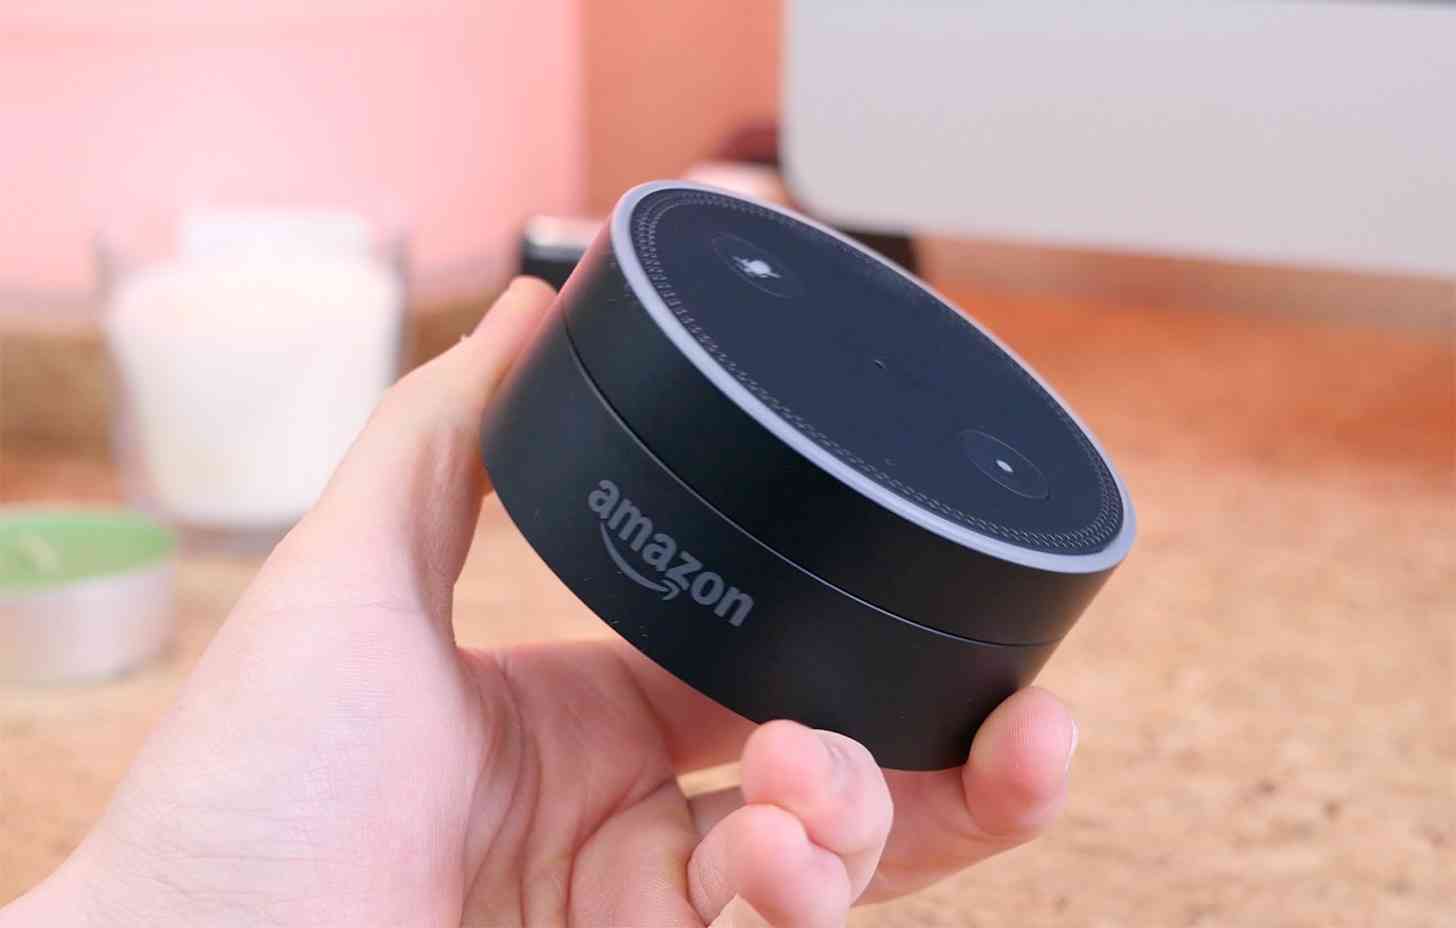 Amazon Echo Dot hands-on